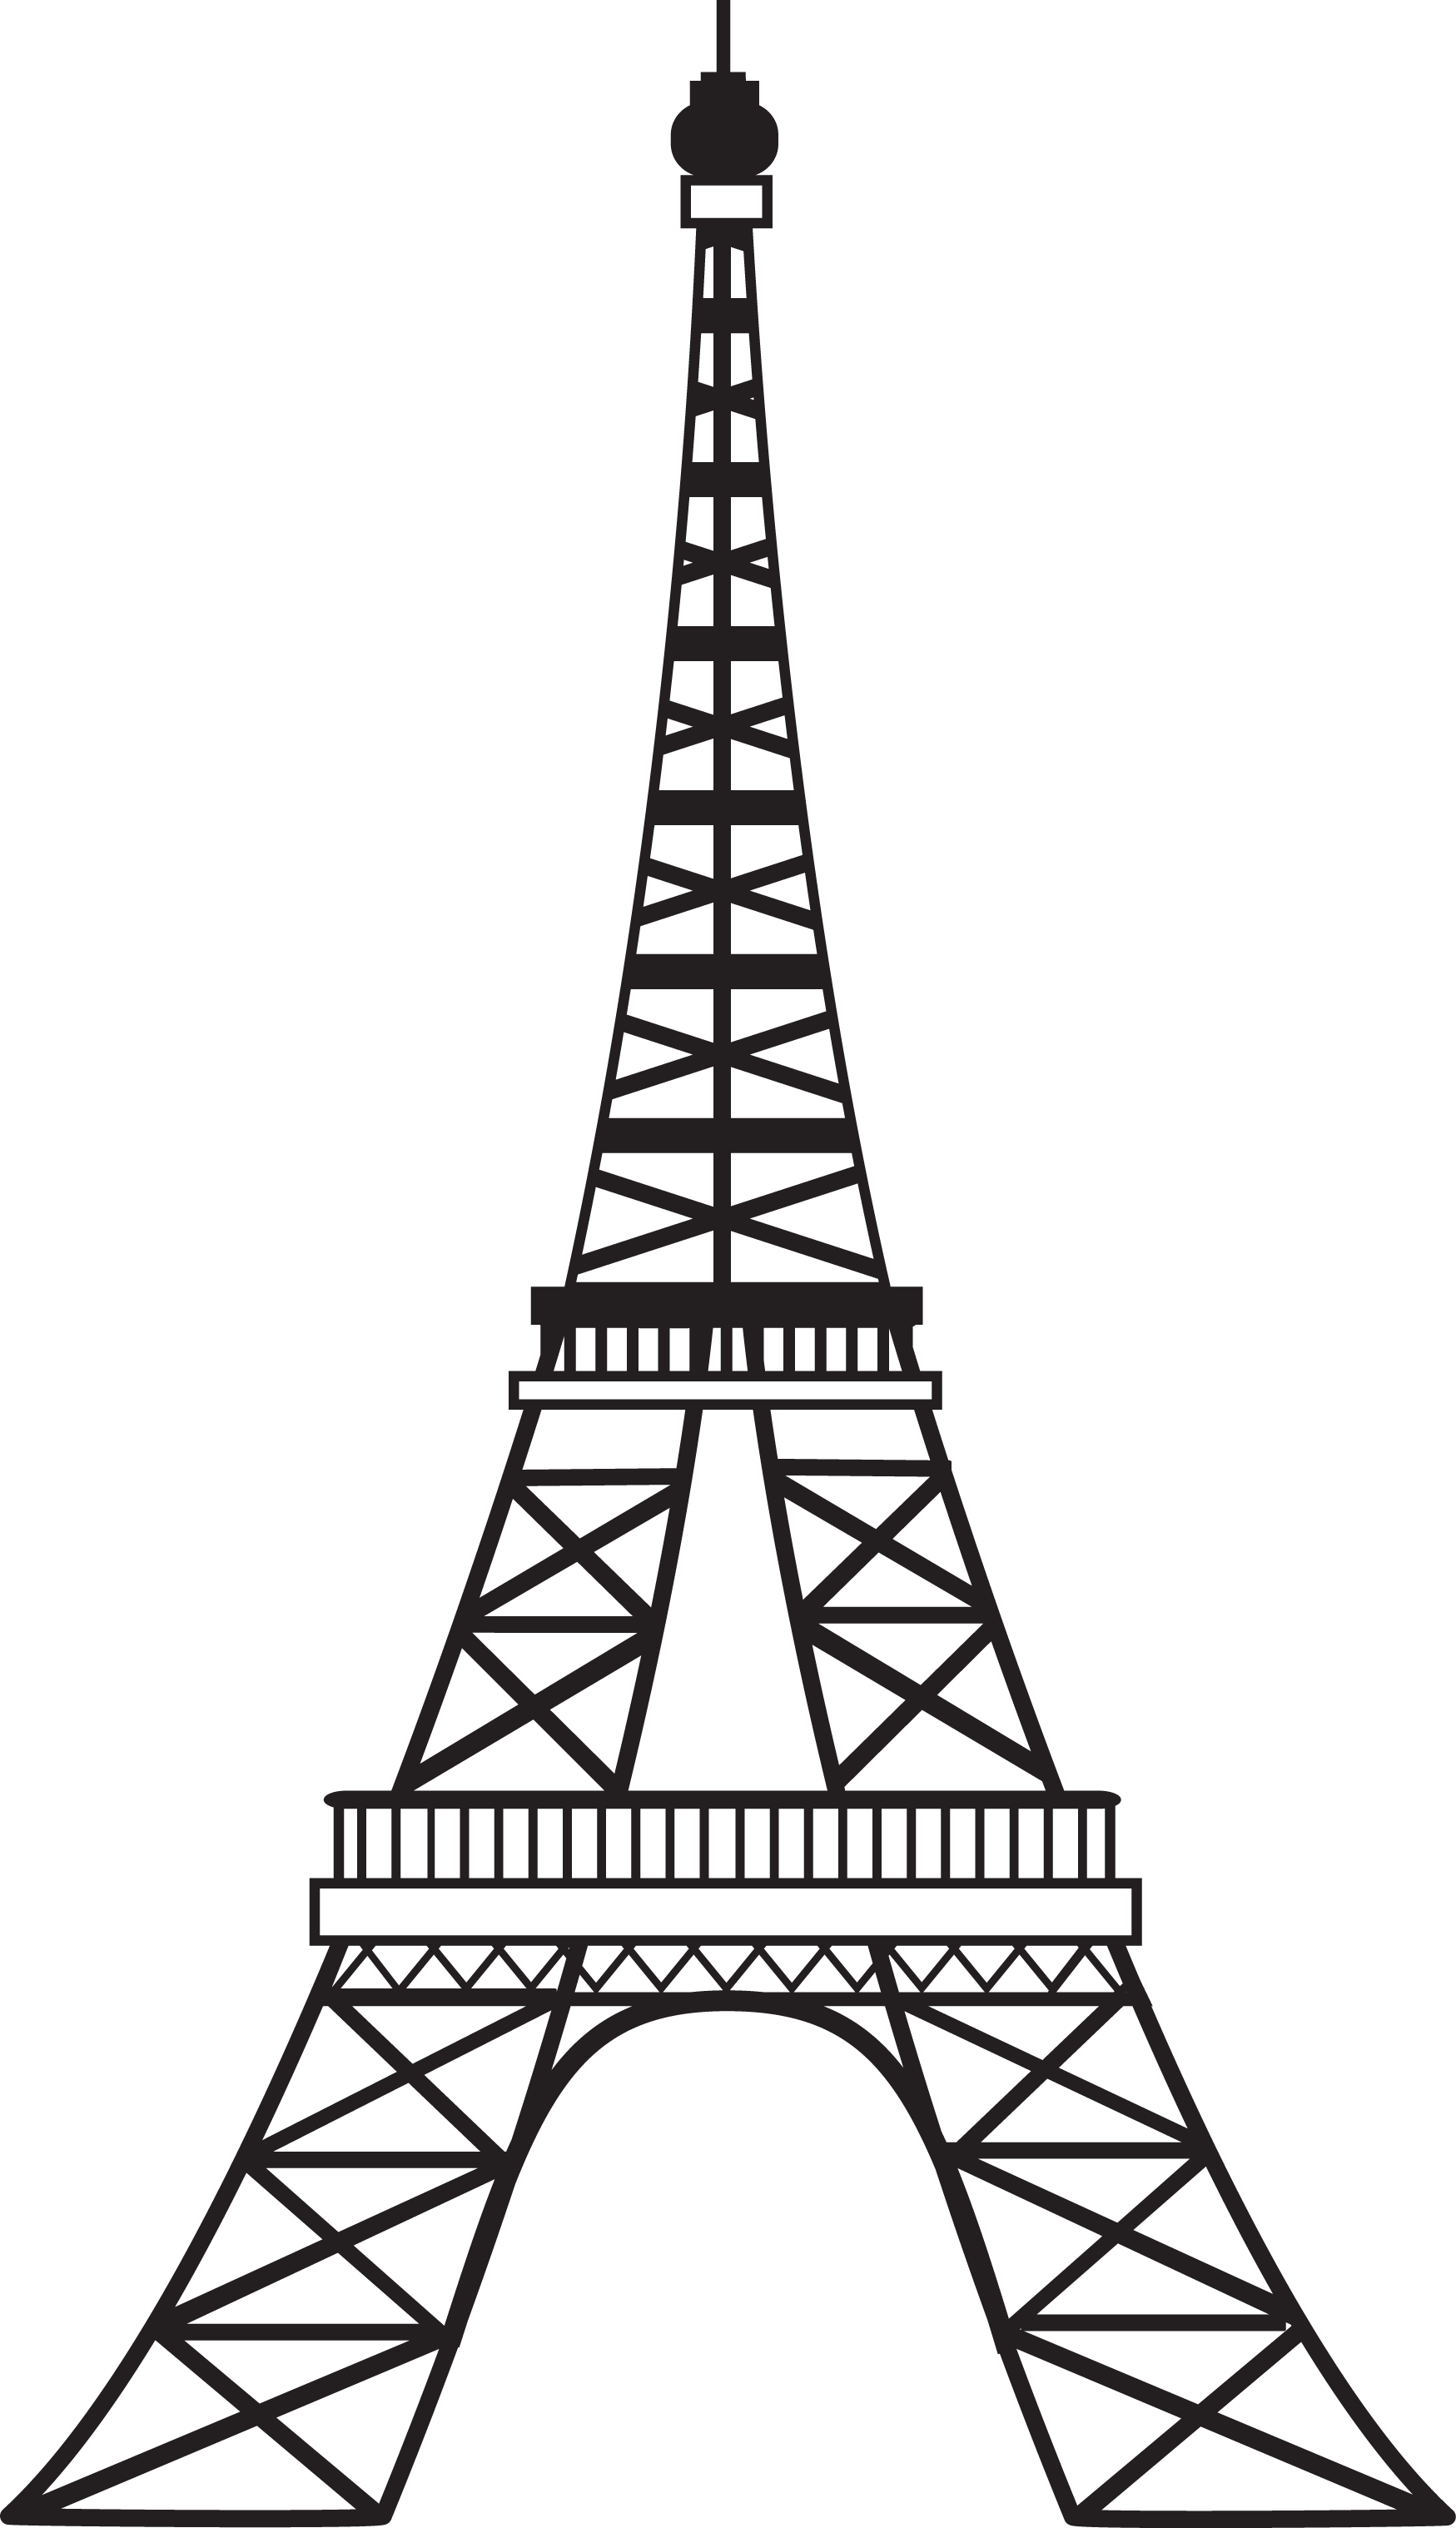 Eiffel Tower Sketch